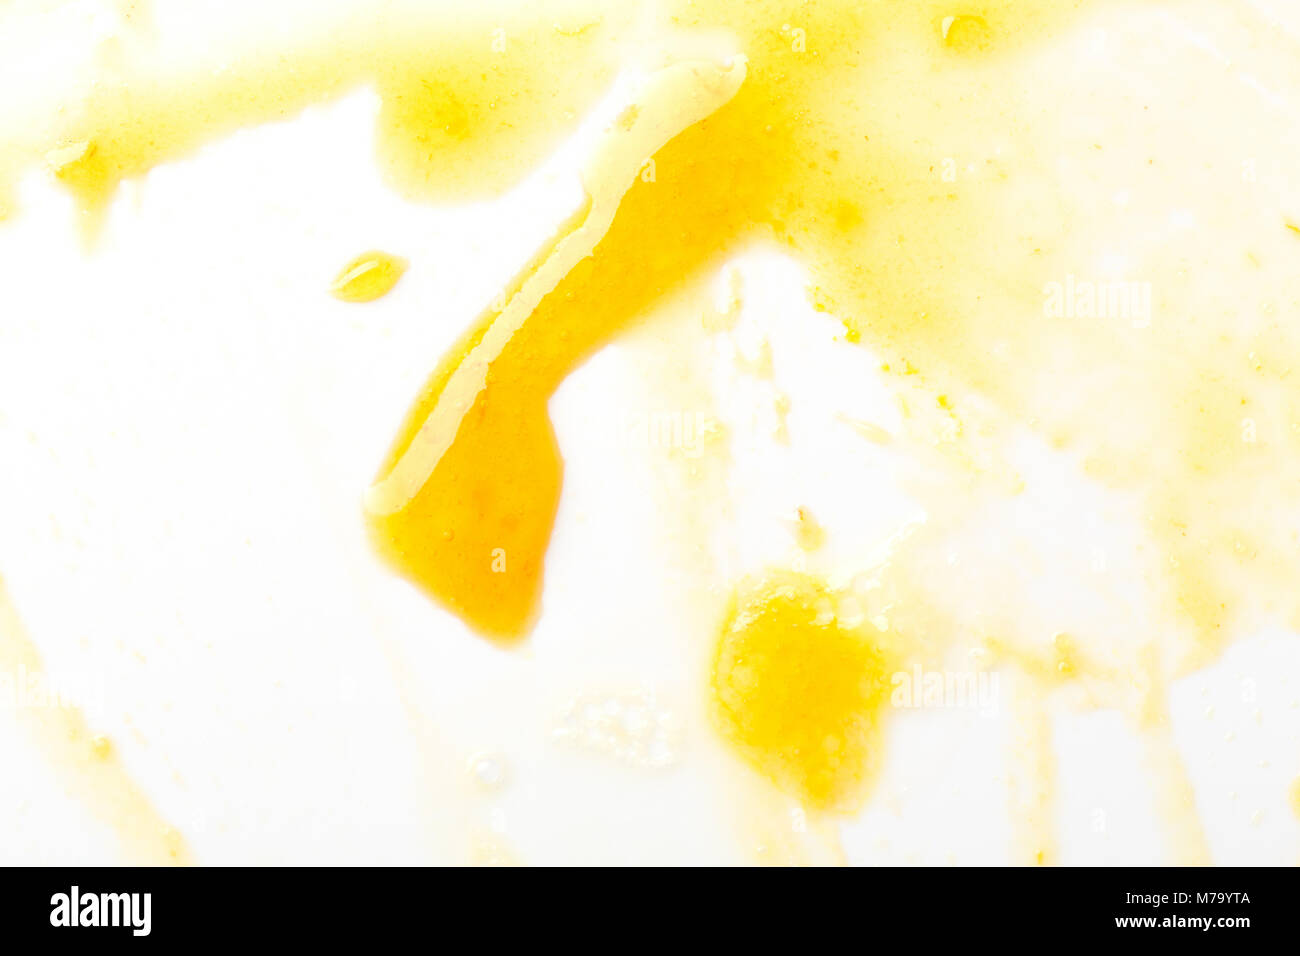 Smeared yellow jam on white. Stock Photo